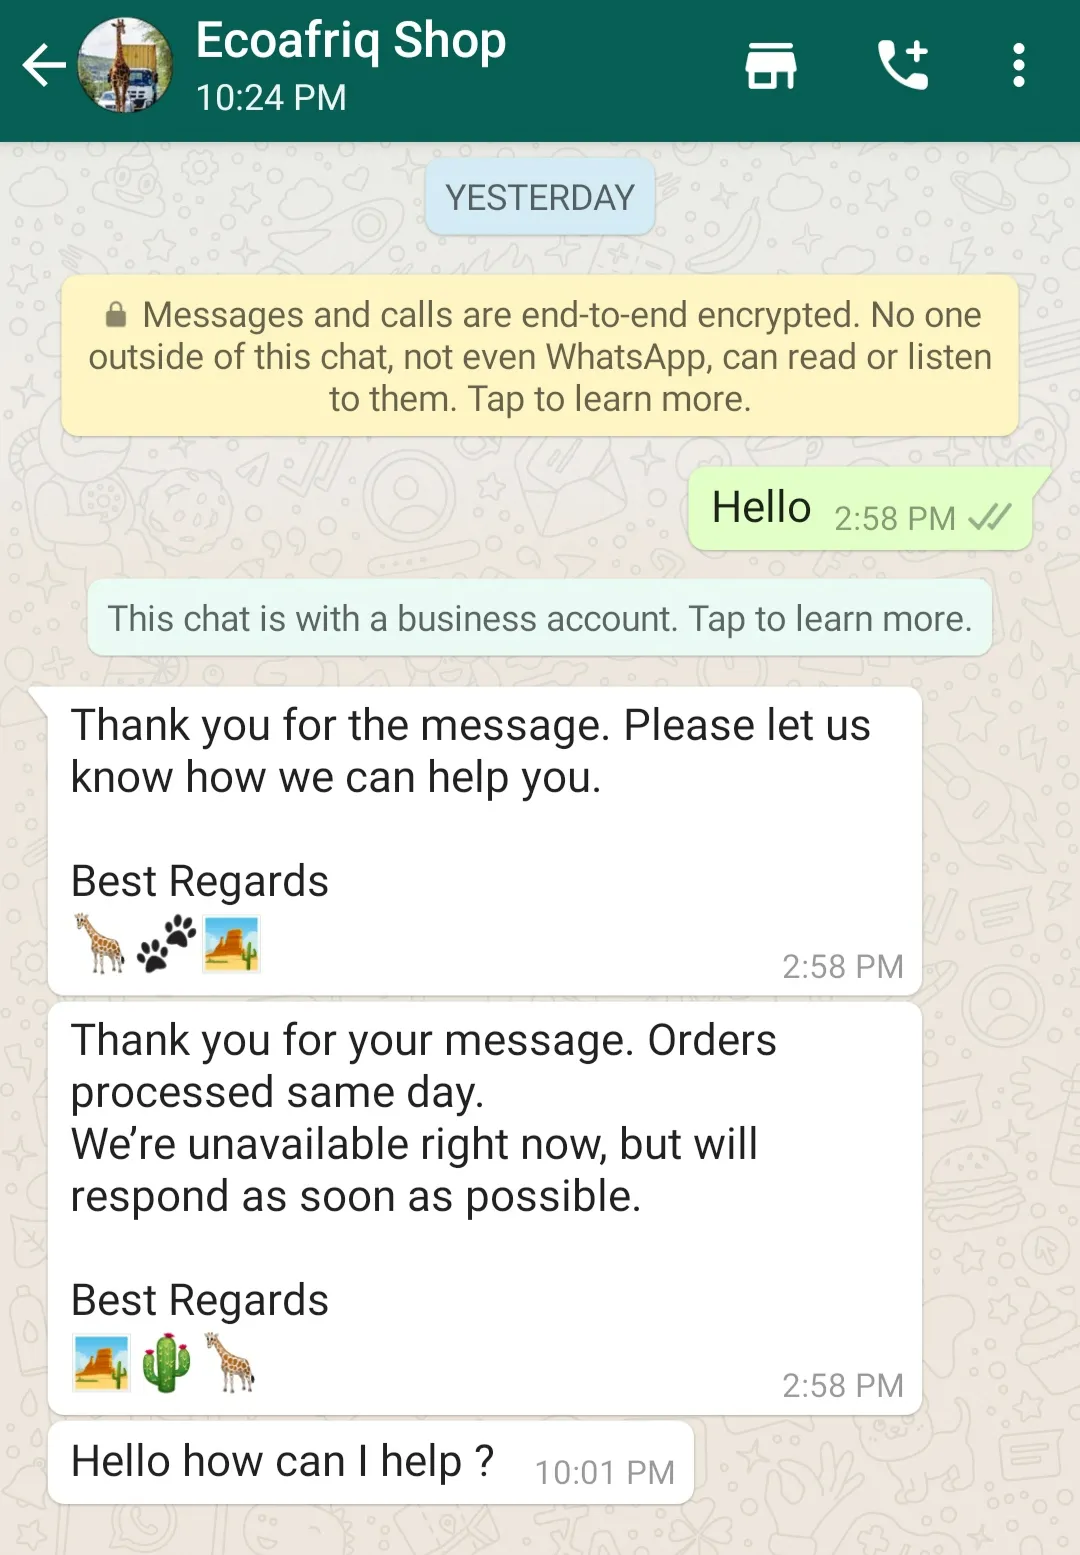 中小型商品零售企业使用WhatsApp营销机器人即时进行问答咨询、聊天对话等客户沟通服务